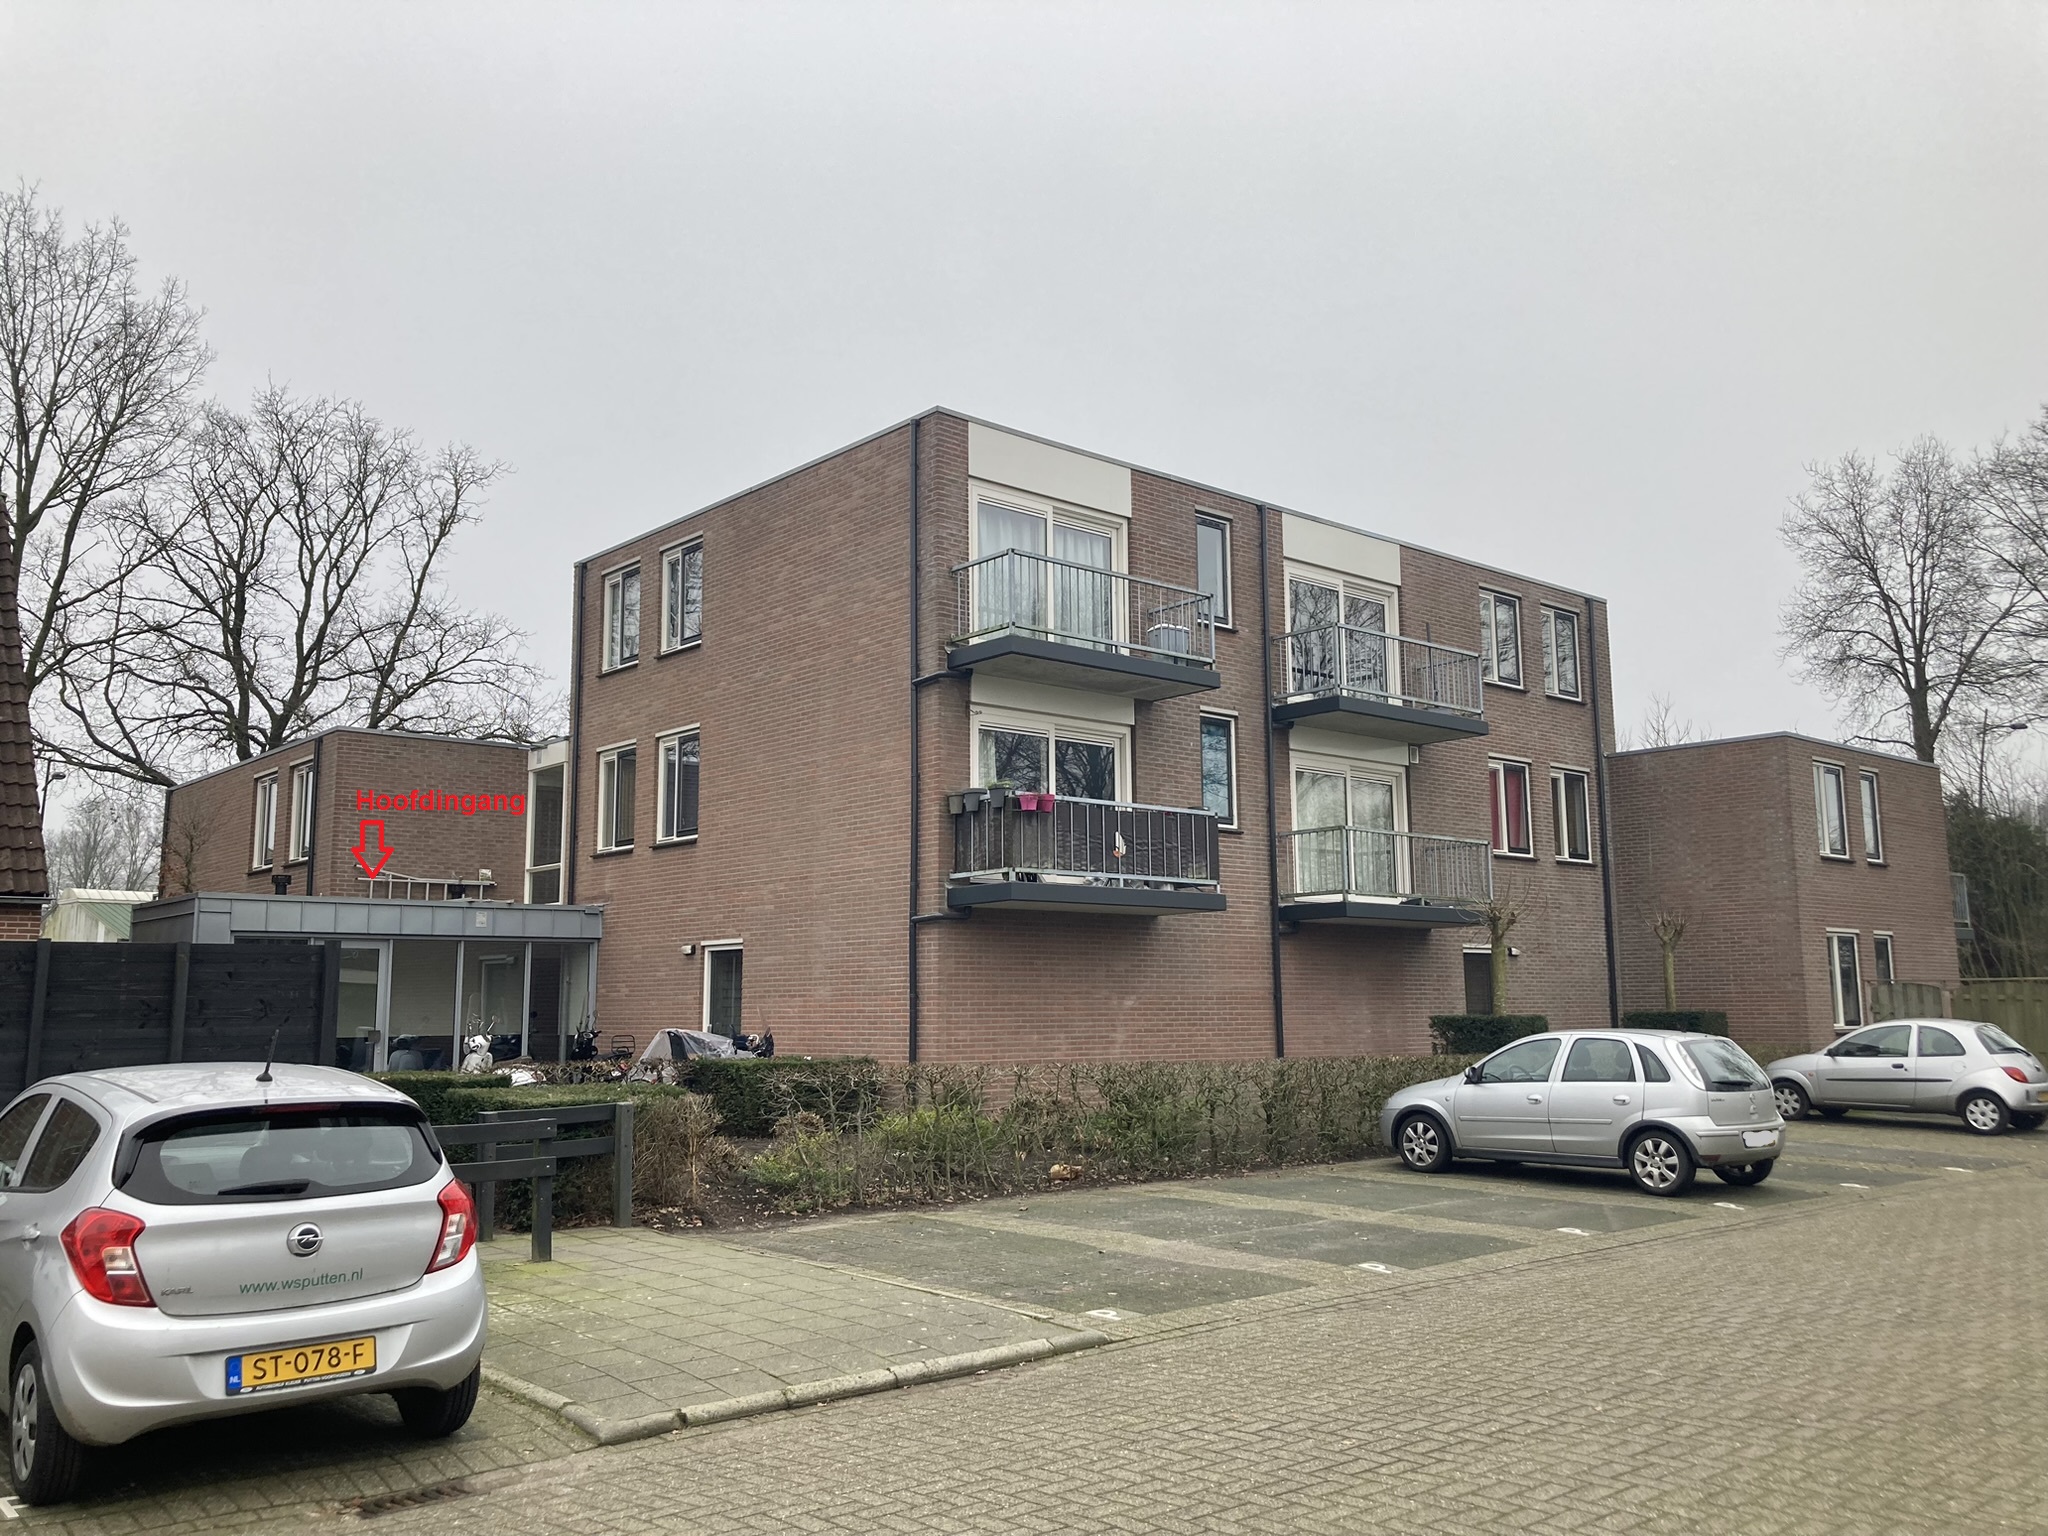 Roggestraat 33, 3882 GV Putten, Nederland